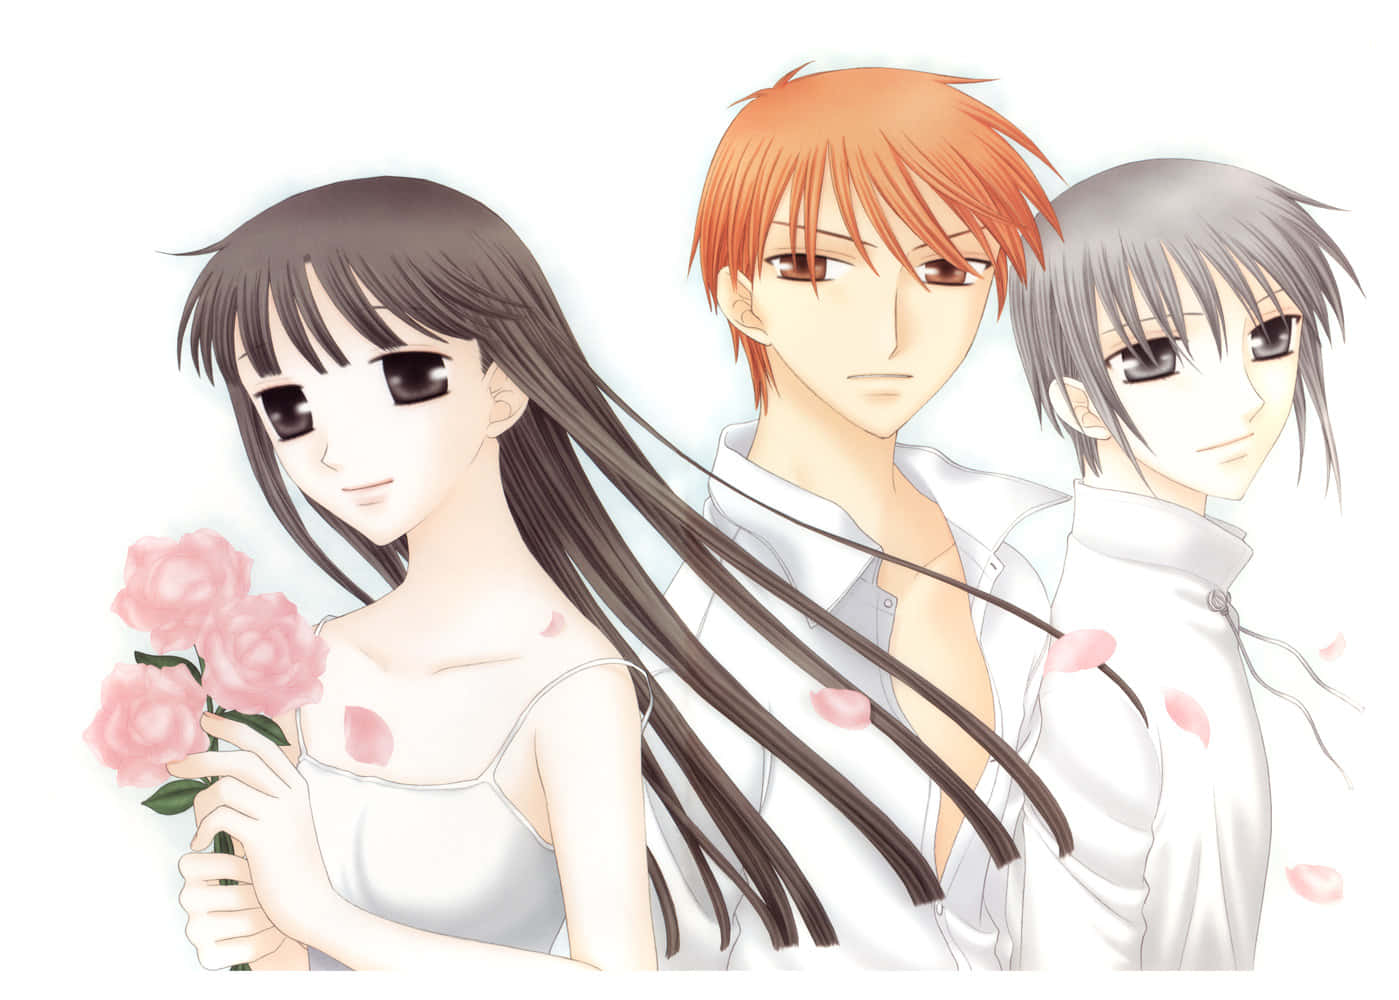 Tohru,kyo Und Yuki - Ein Fan Art Aus Dem Anime Fruits Basket. Wallpaper